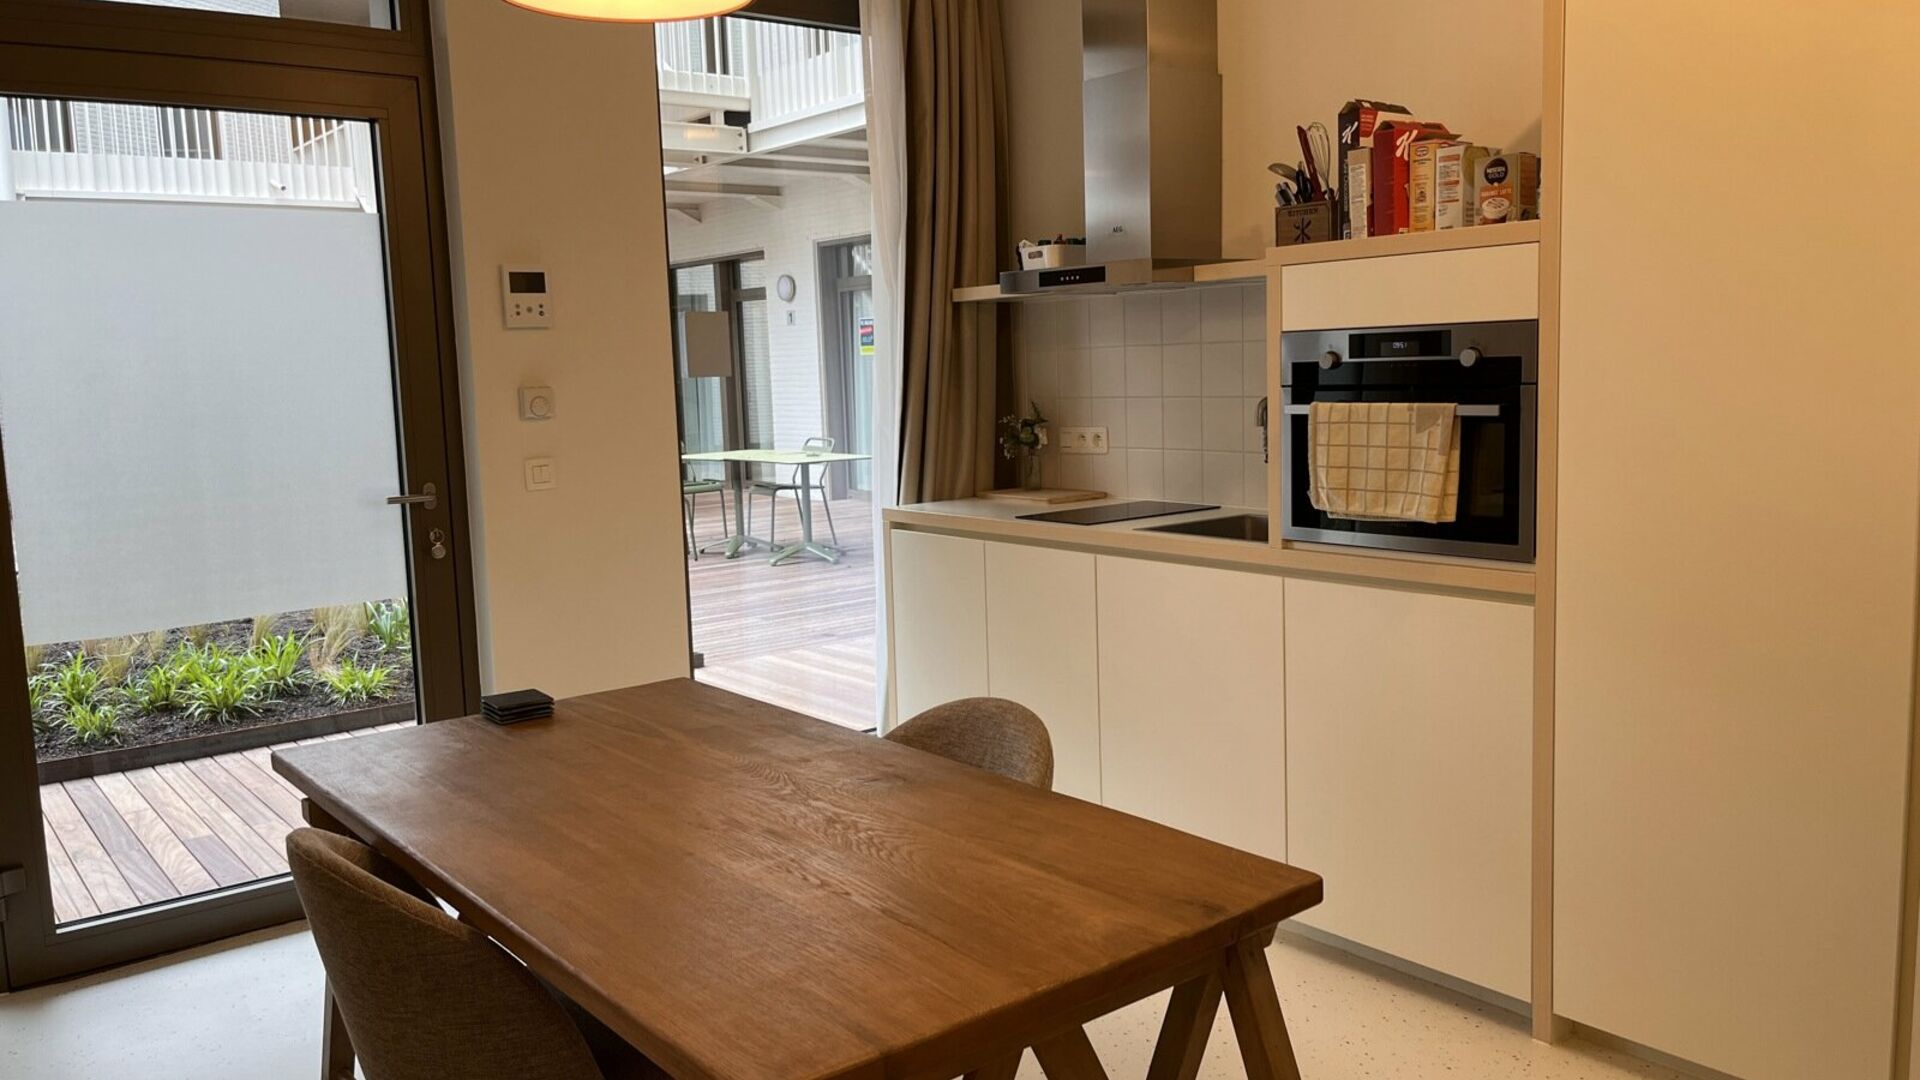 La résidence YOU, située au milieu de la Bondgenotenlaan, est le nouveau lieu de prédilection des étudiants. Ce studio confortable est situé à l'arrière, en rez-de-jardin, et mesure 28 m². Le studio comprend un bureau, une table à manger, une cui